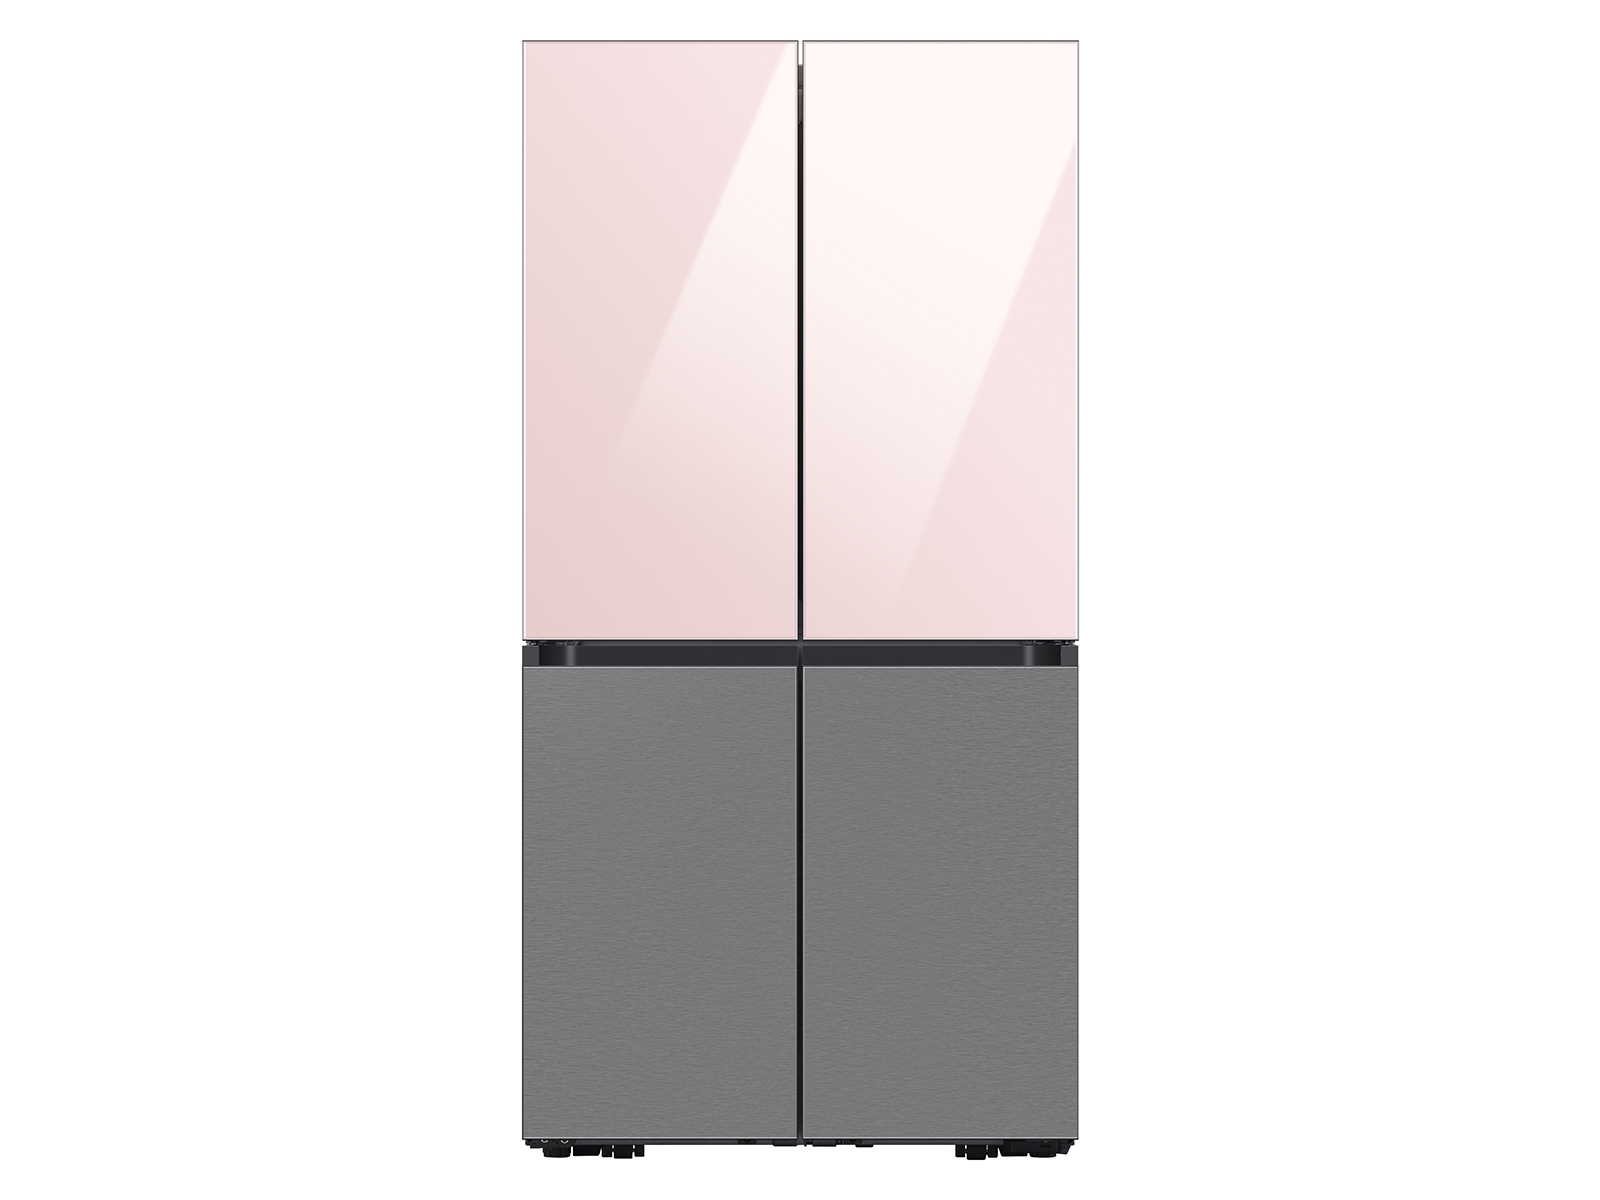 Thumbnail image of Bespoke 4-Door Flex™ Refrigerator Panel in Pink Glass - Top Panel